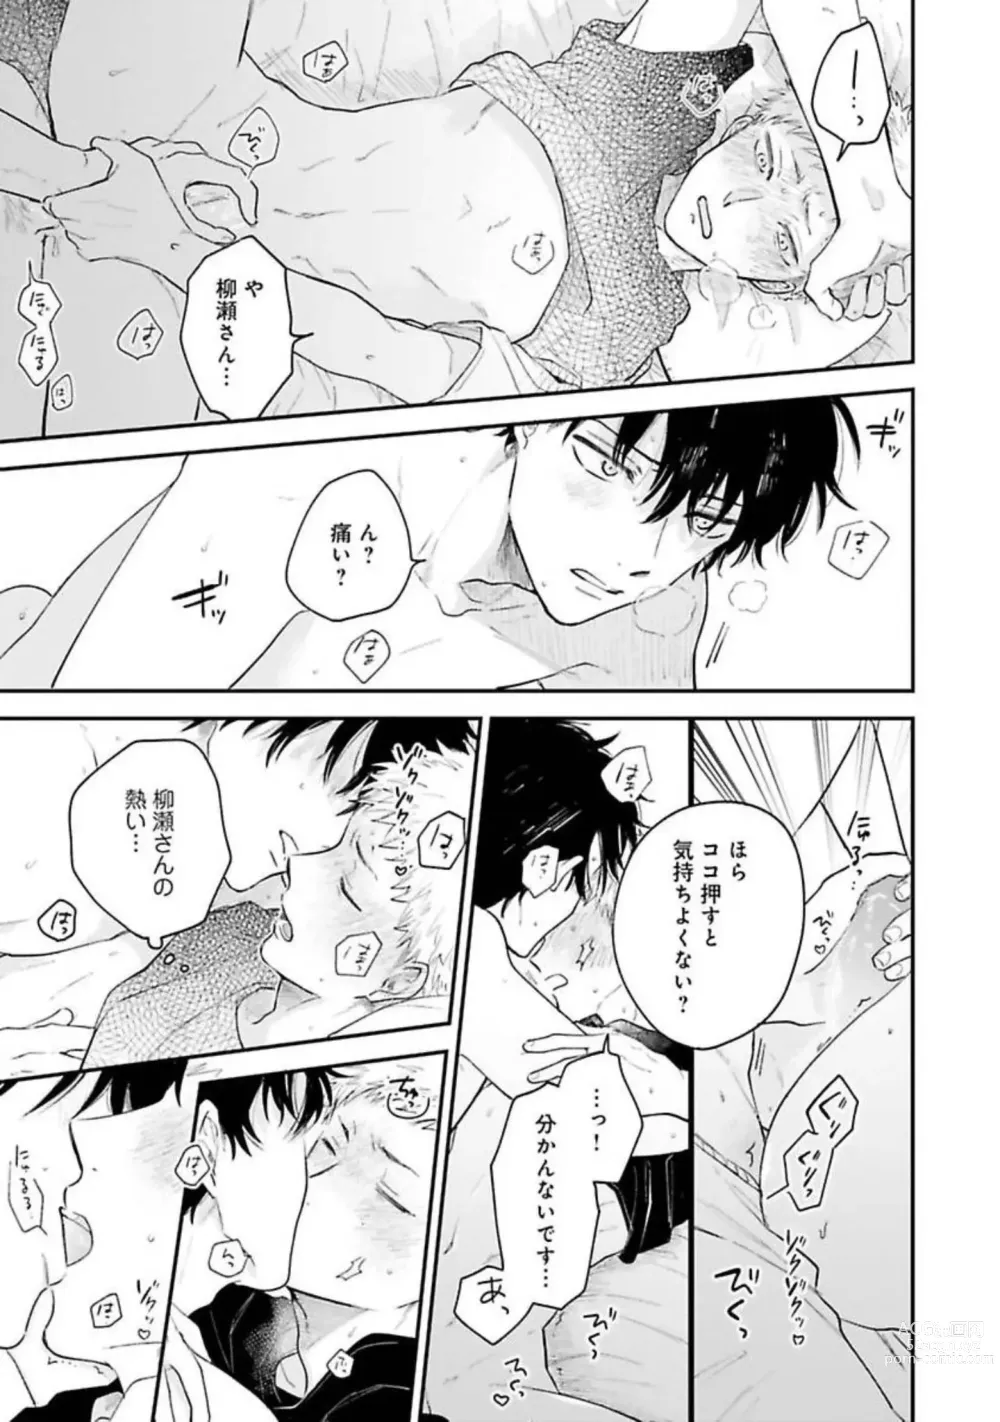 Page 159 of manga Senpai, Danjite Koi de wa!